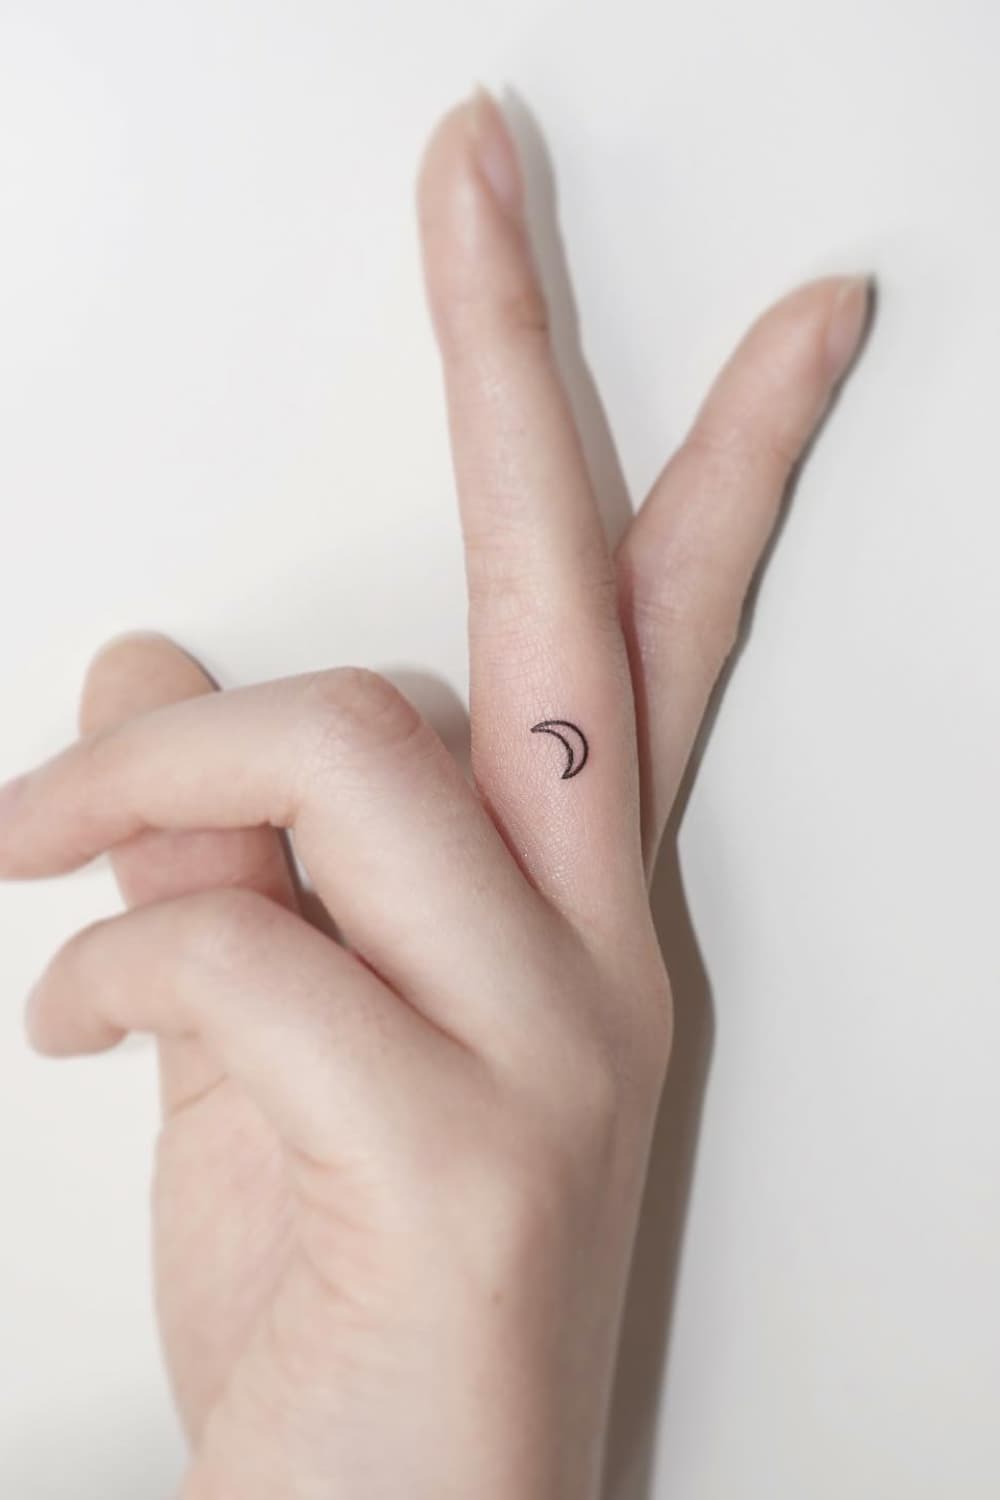 Mini Moon tattoo